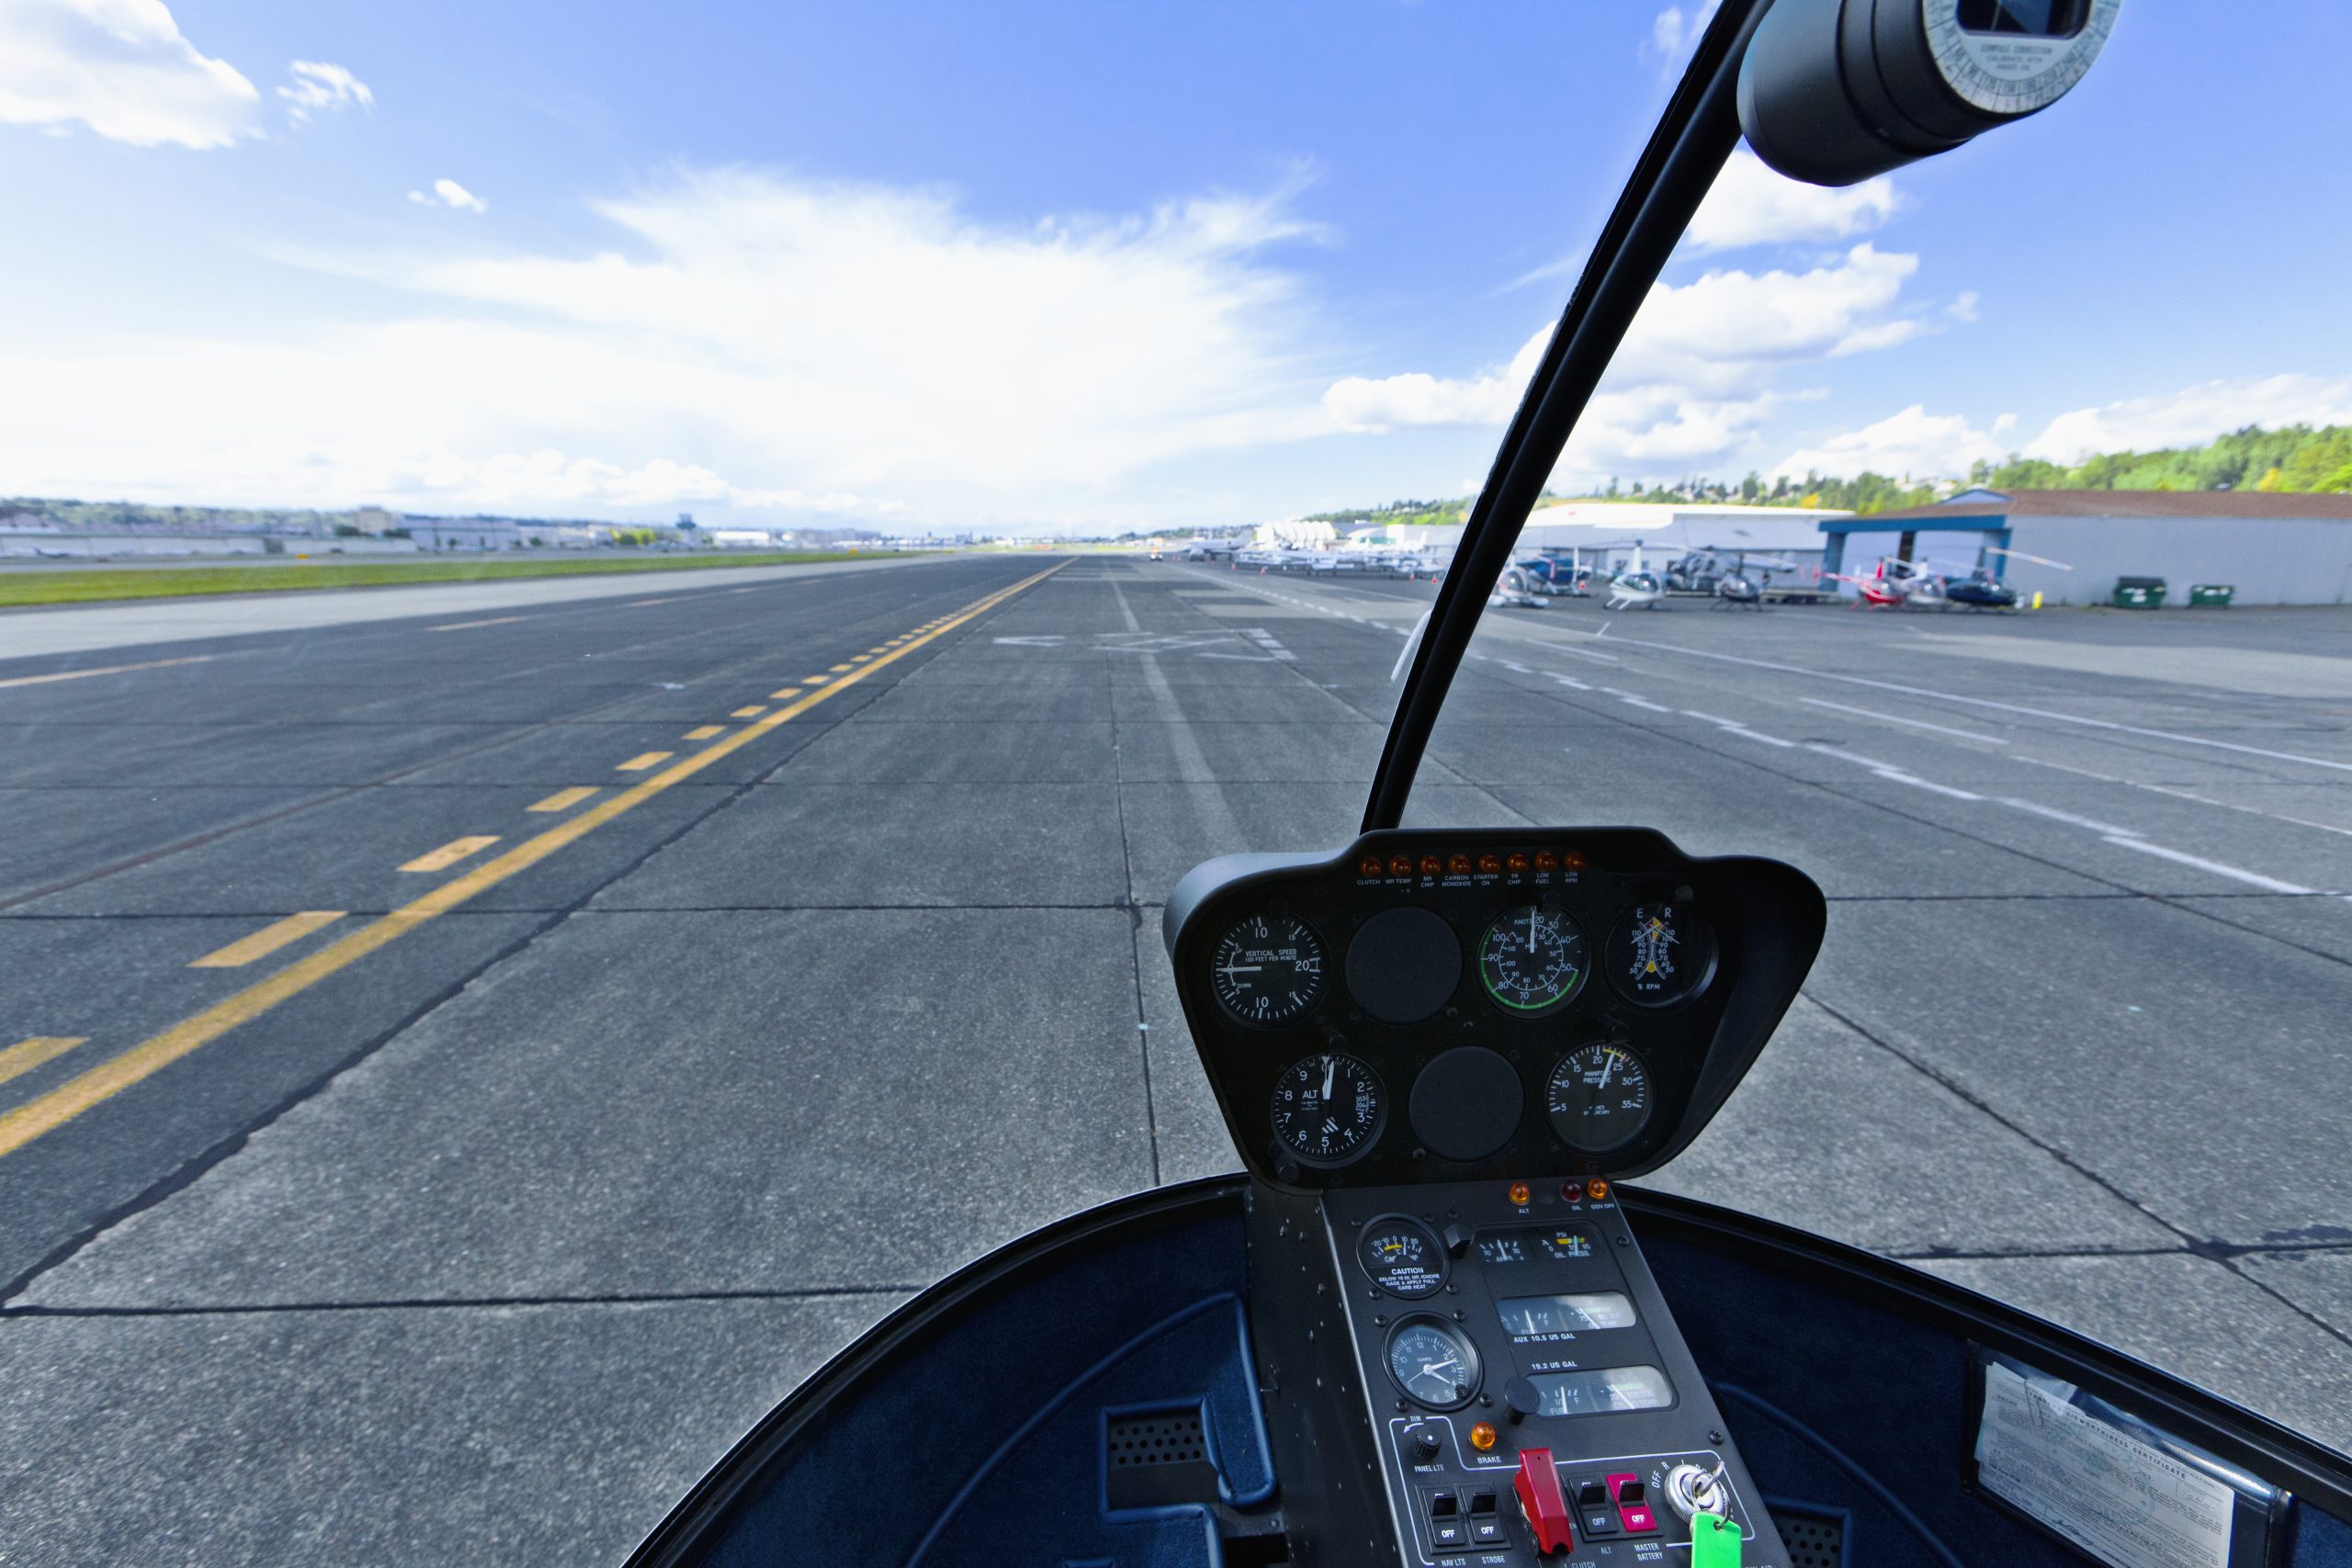 Havaalanı PAT Sahaları ve Helikopter Pistleri ve Tesisleri İnşaatı